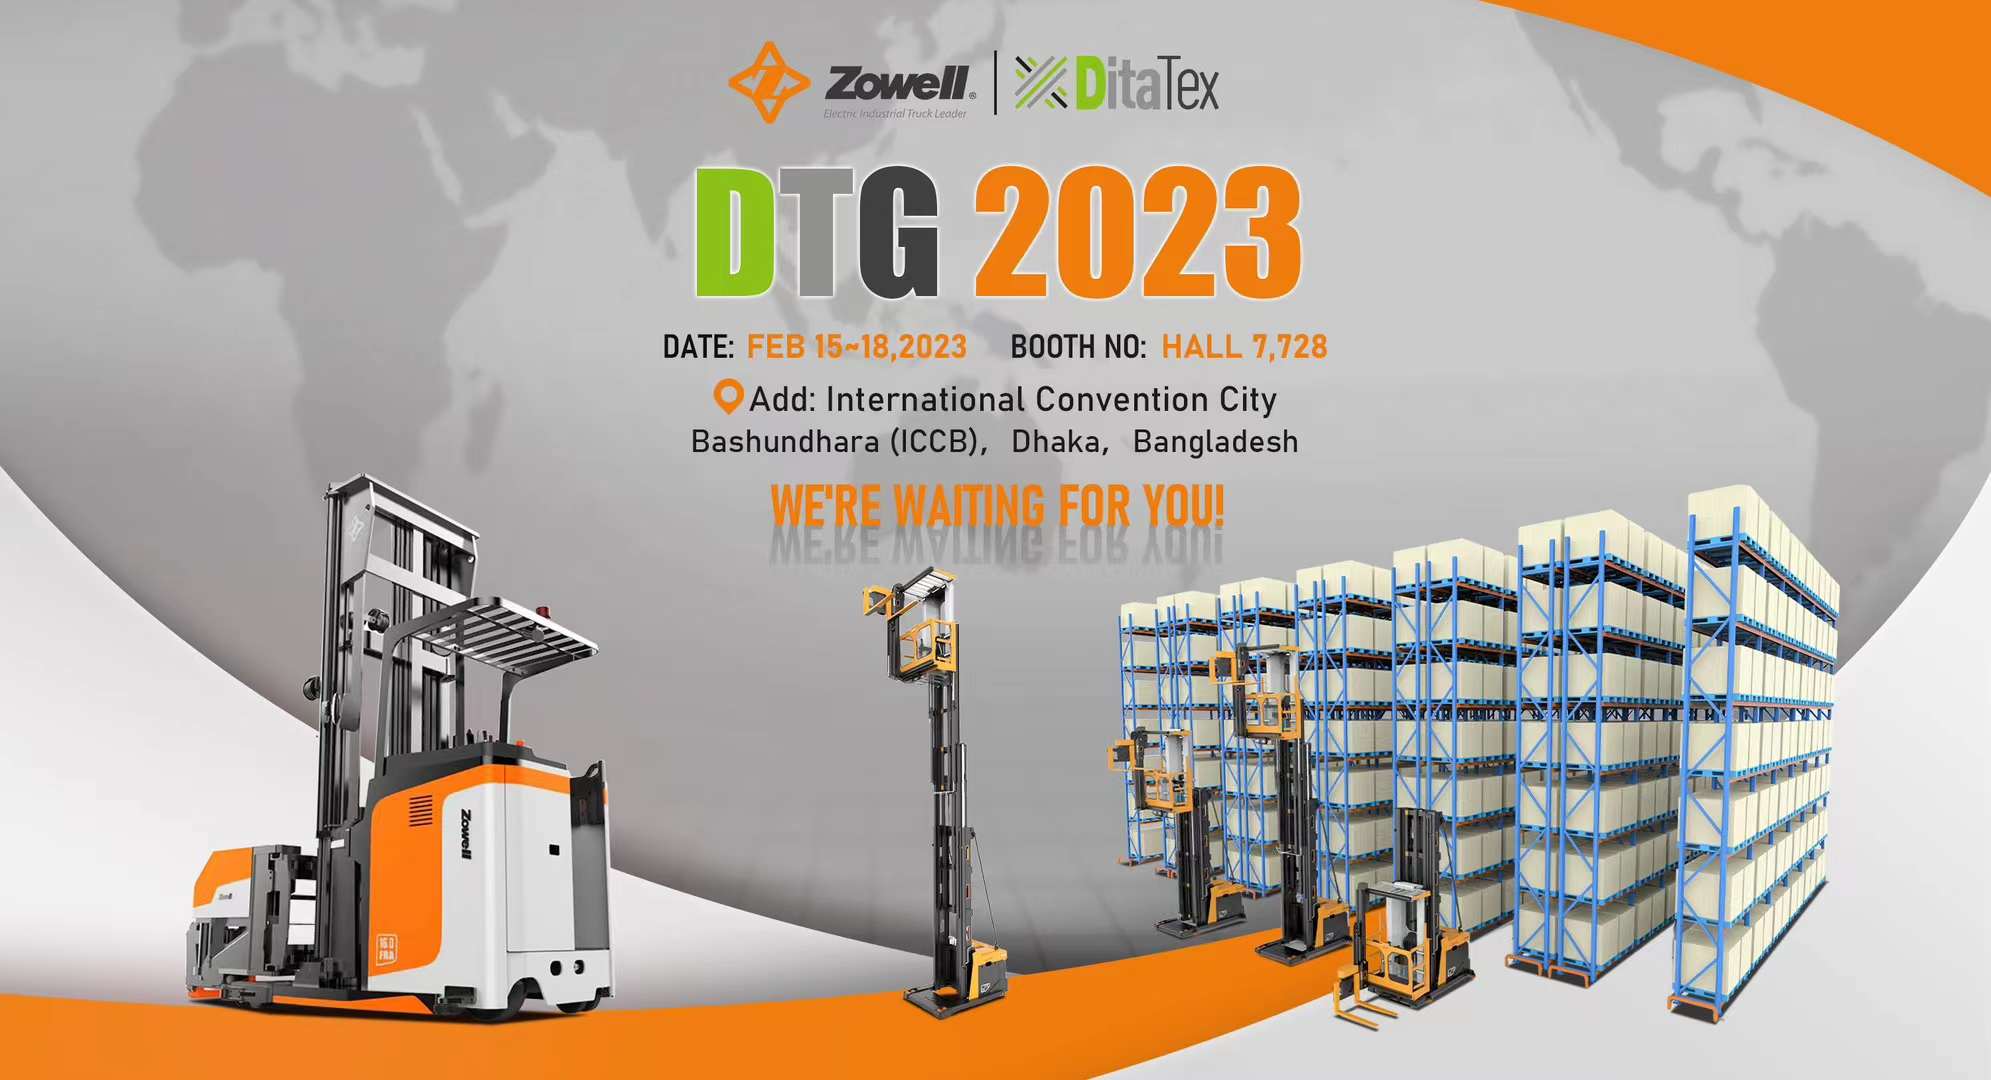 معرض DTG 2023: Zowell و DitaTex في مدينة المؤتمرات الدولية باشوندهارا (ICCB) في بنغلاديش